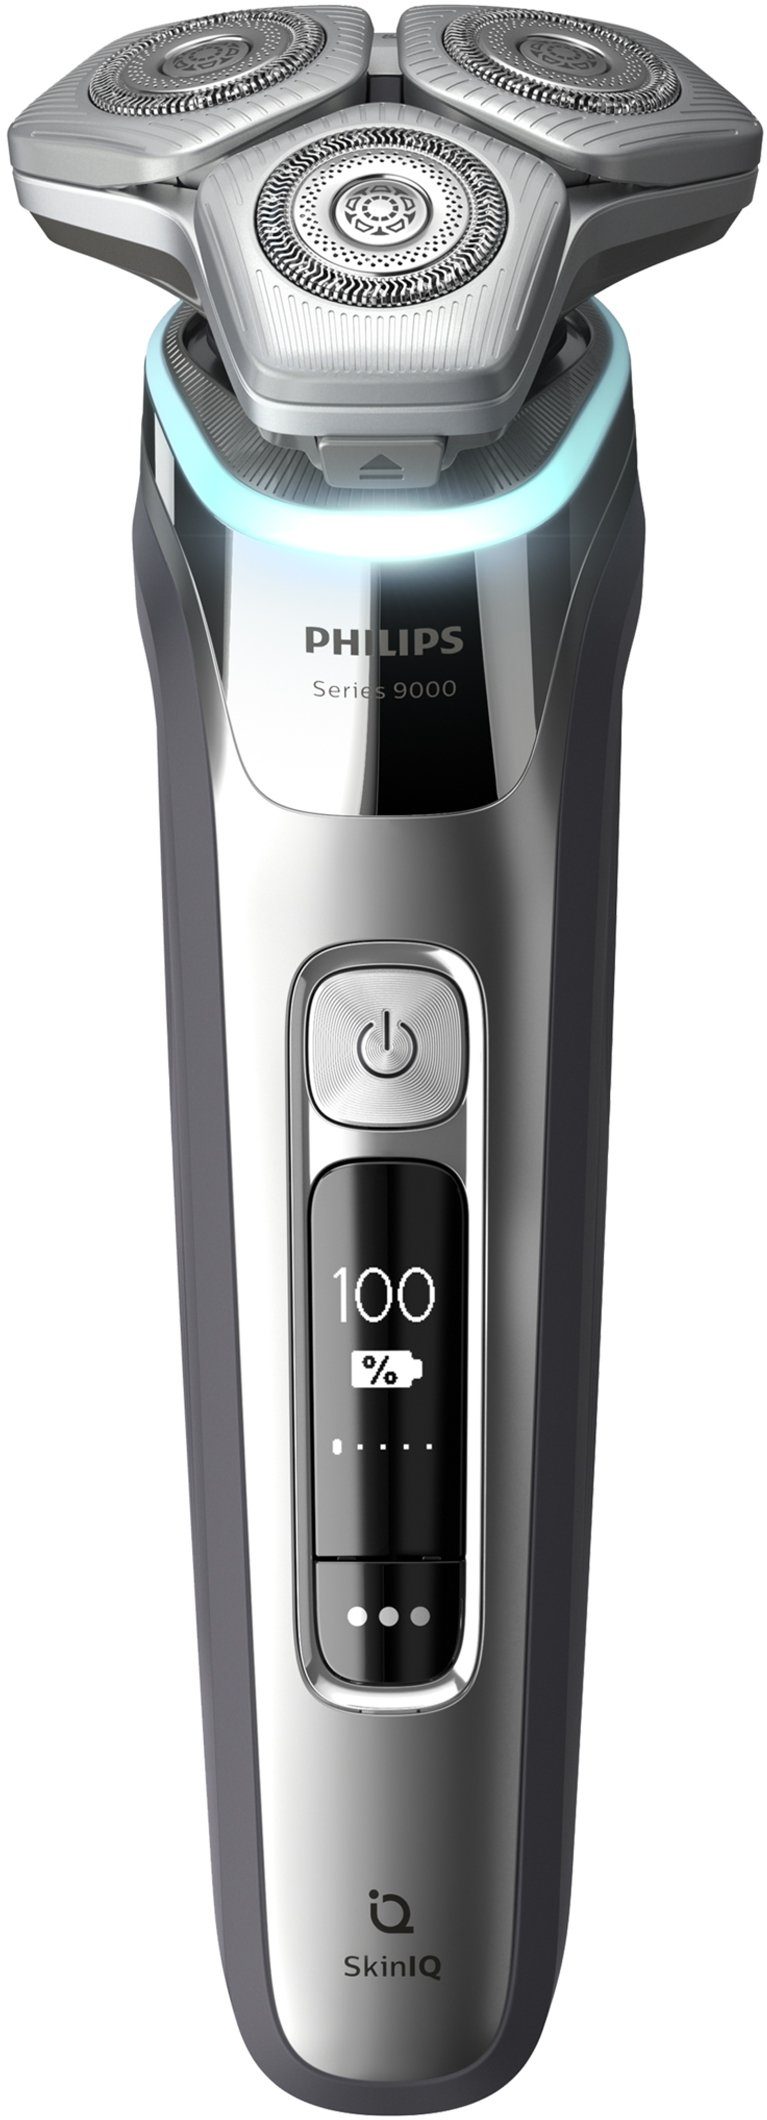 Philips Elektrorasierer Shaver series 9000 Skin mit Ladestation und inkl. Technologie, IQ Etui S9985/35